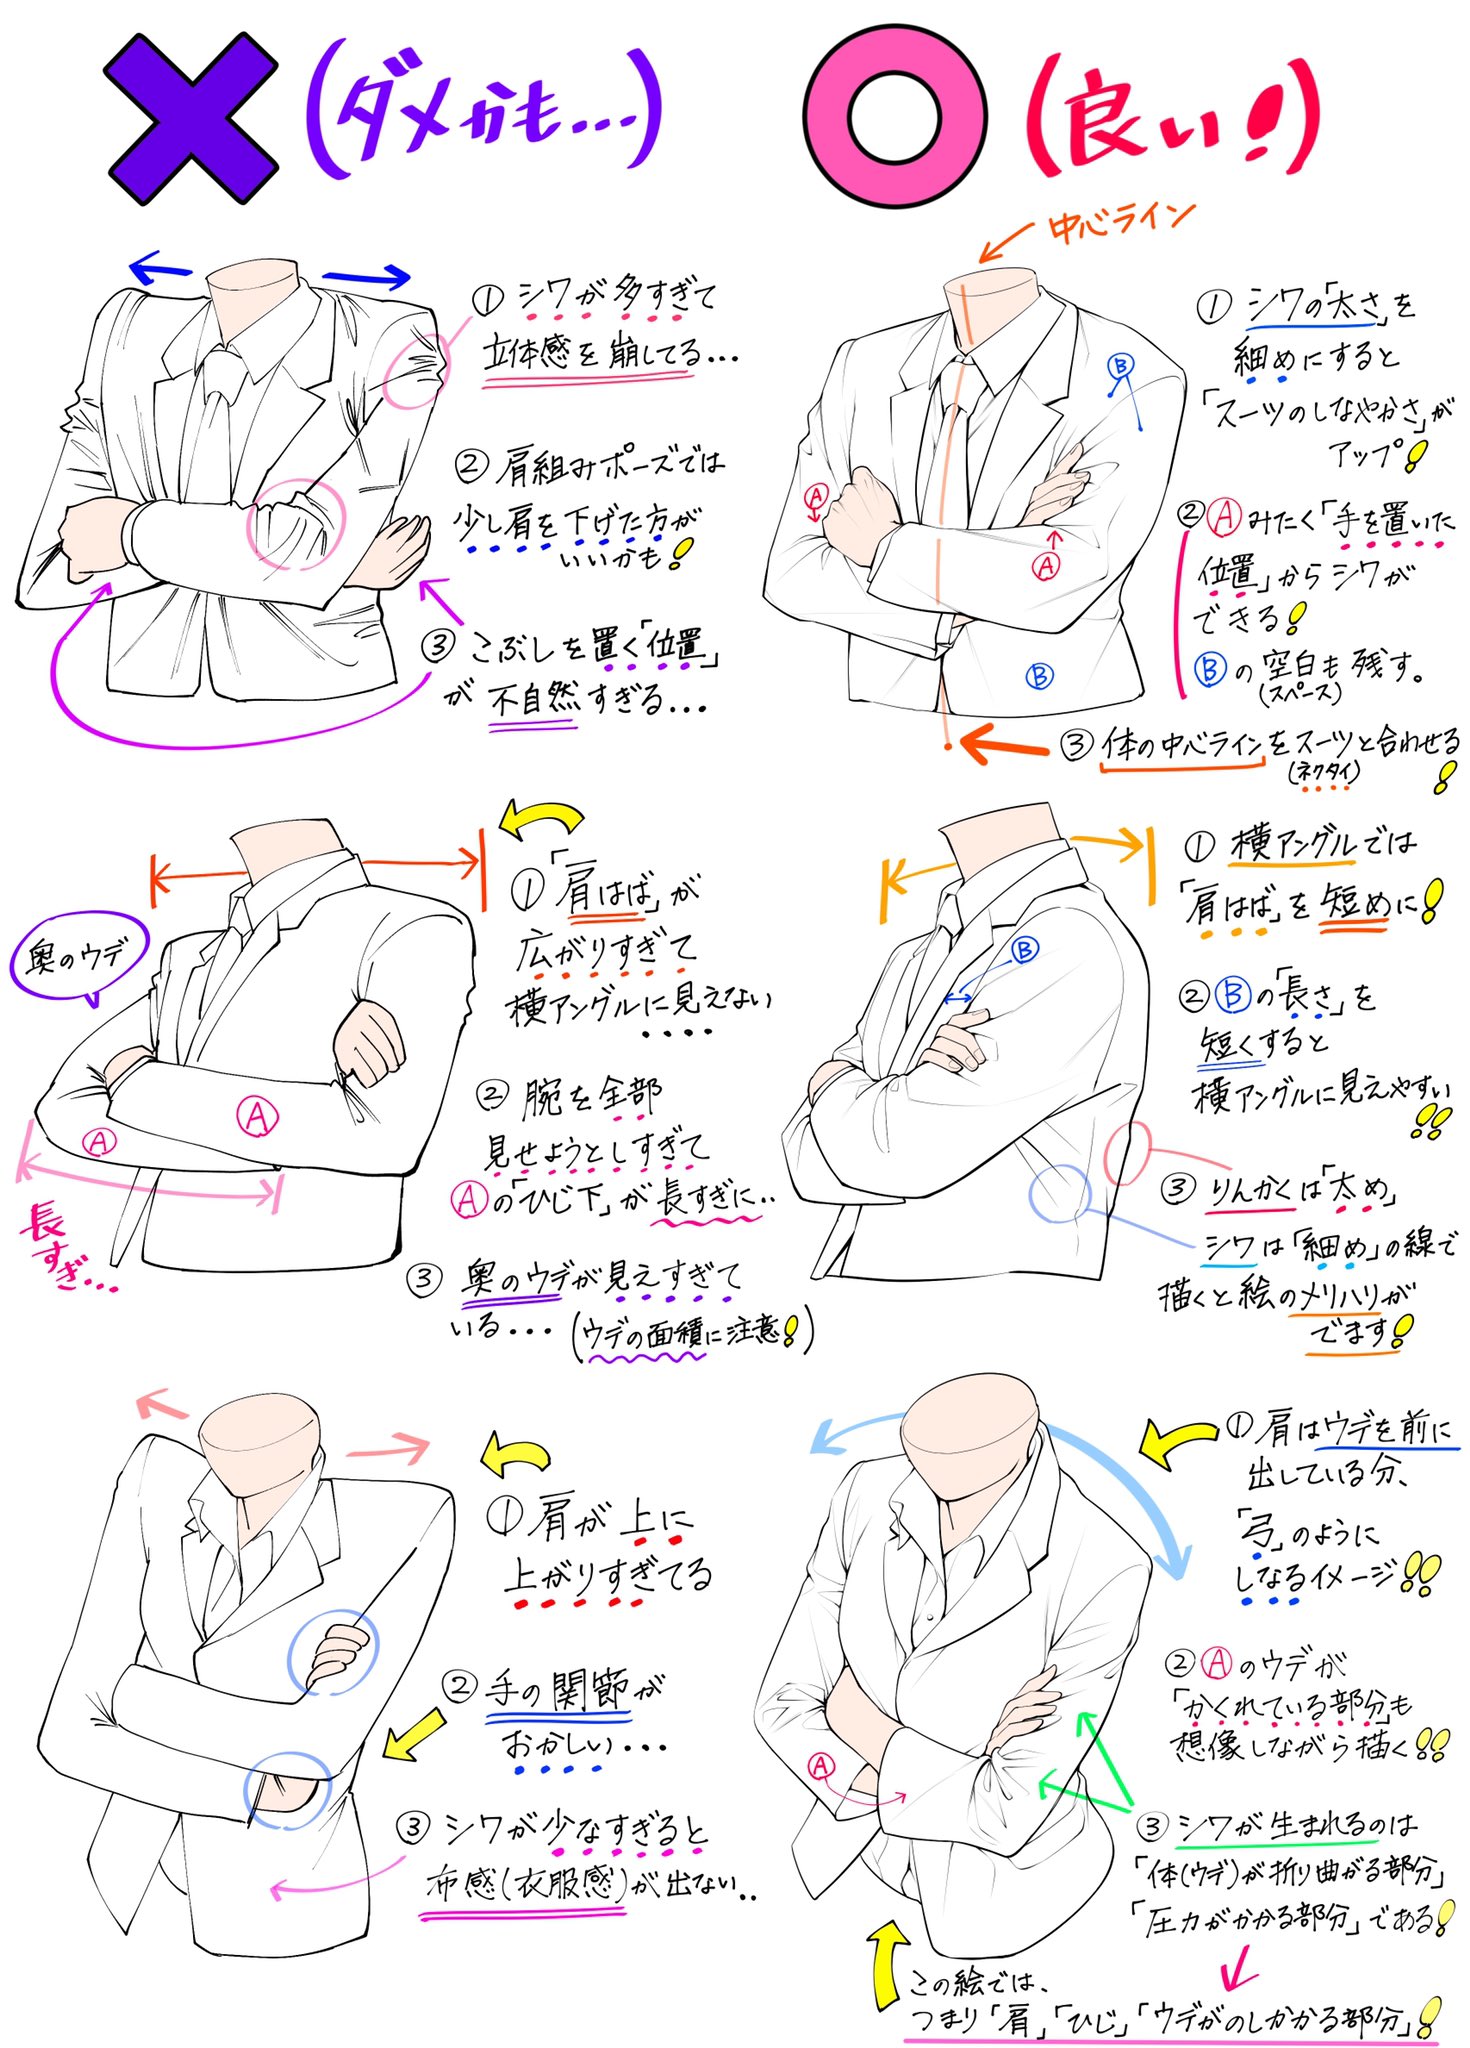 吉村拓也 イラスト講座 腕組みポーズの描き方 腕の重なりとアングル が上達する ダメかも と 良いかも T Co X8vbae9hyx Twitter